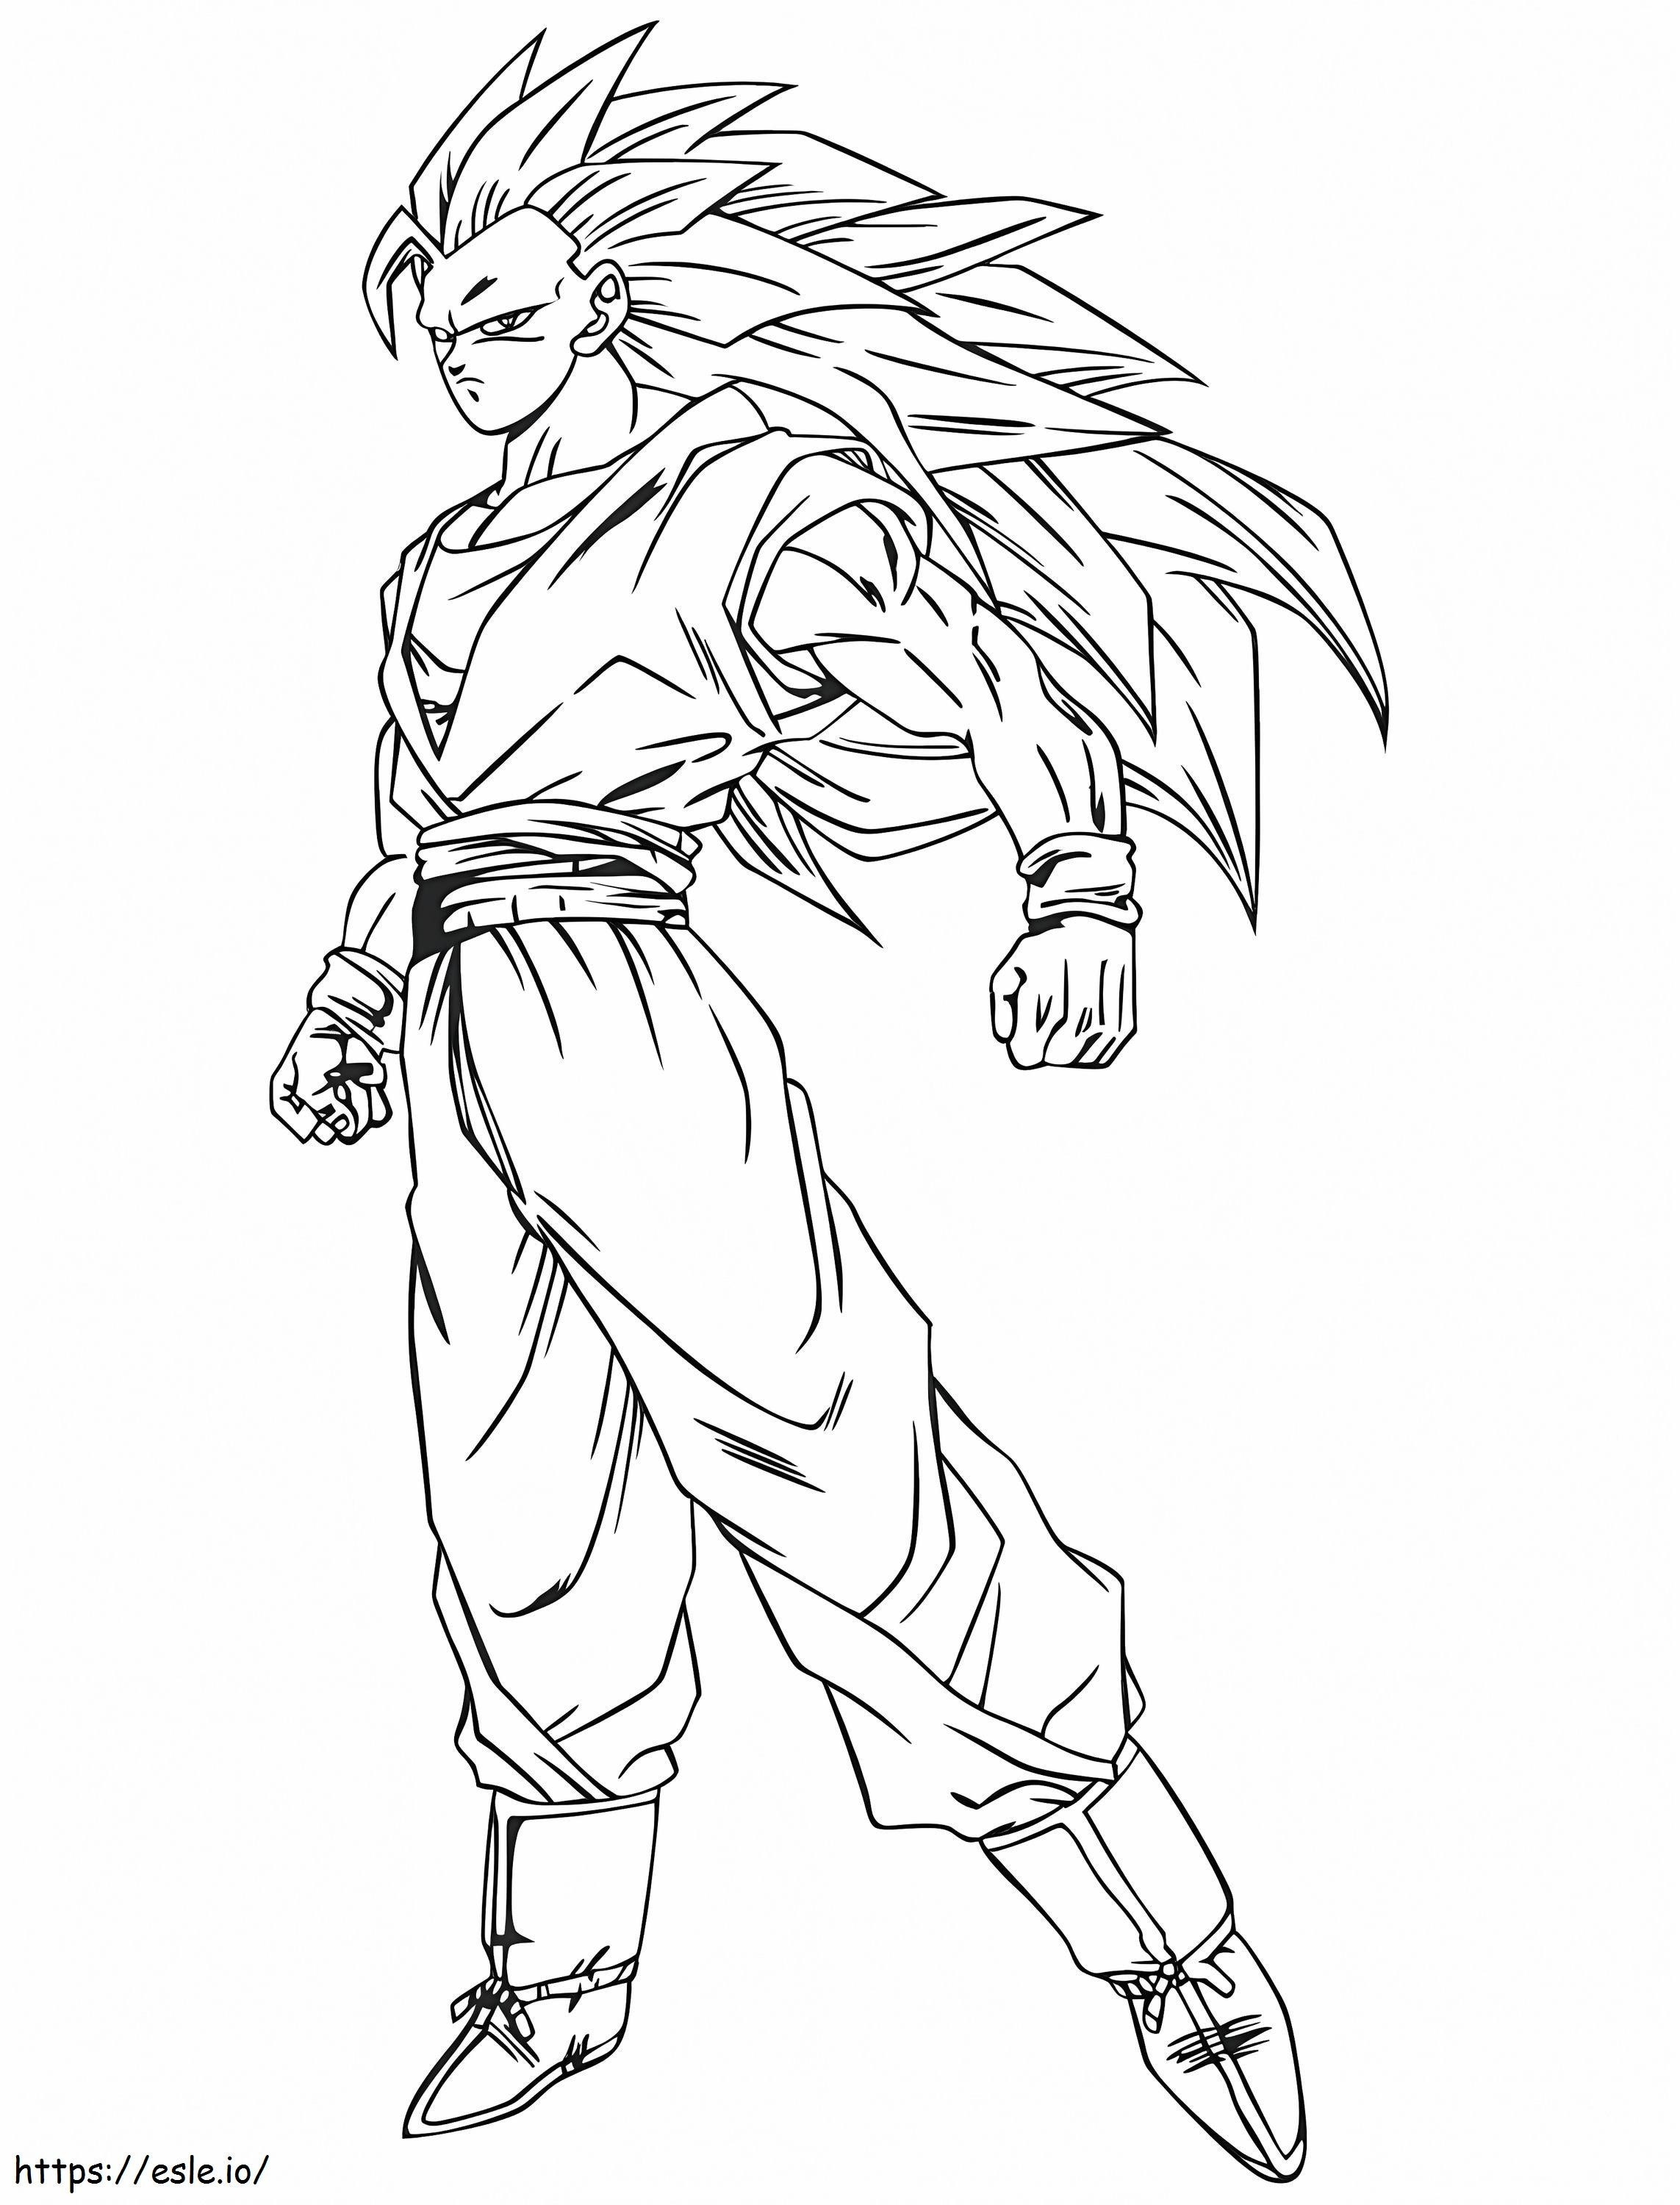 Son Goku Super Saiyajin 3 ausmalbilder